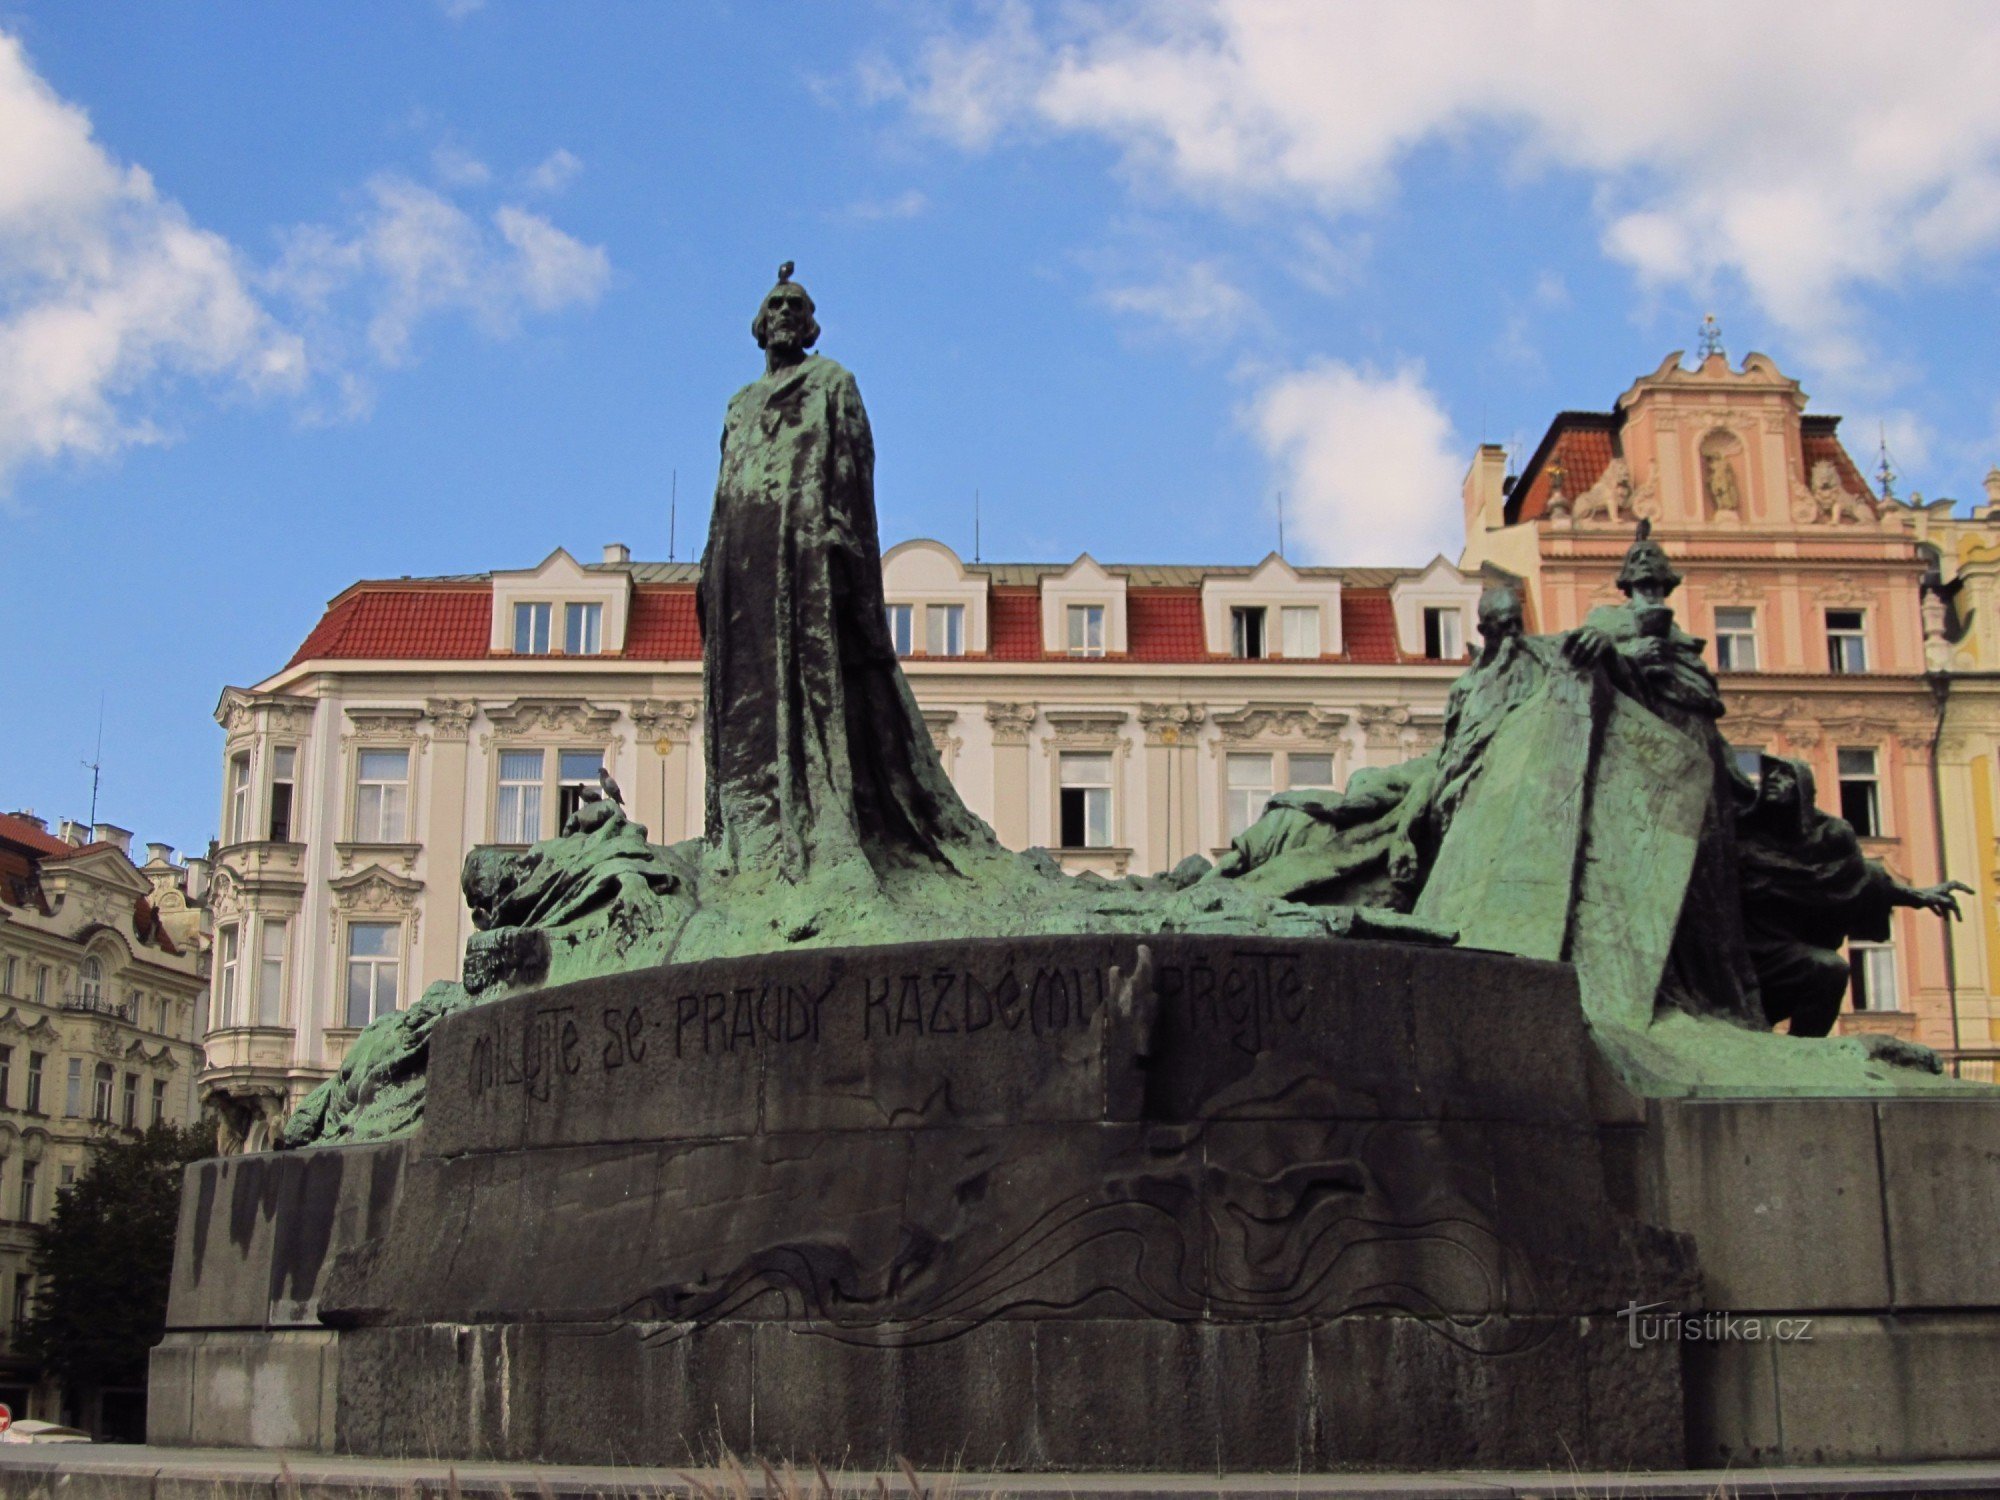 Pomnik mistrza Jana Husa na Rynku Starego Miasta w Pradze